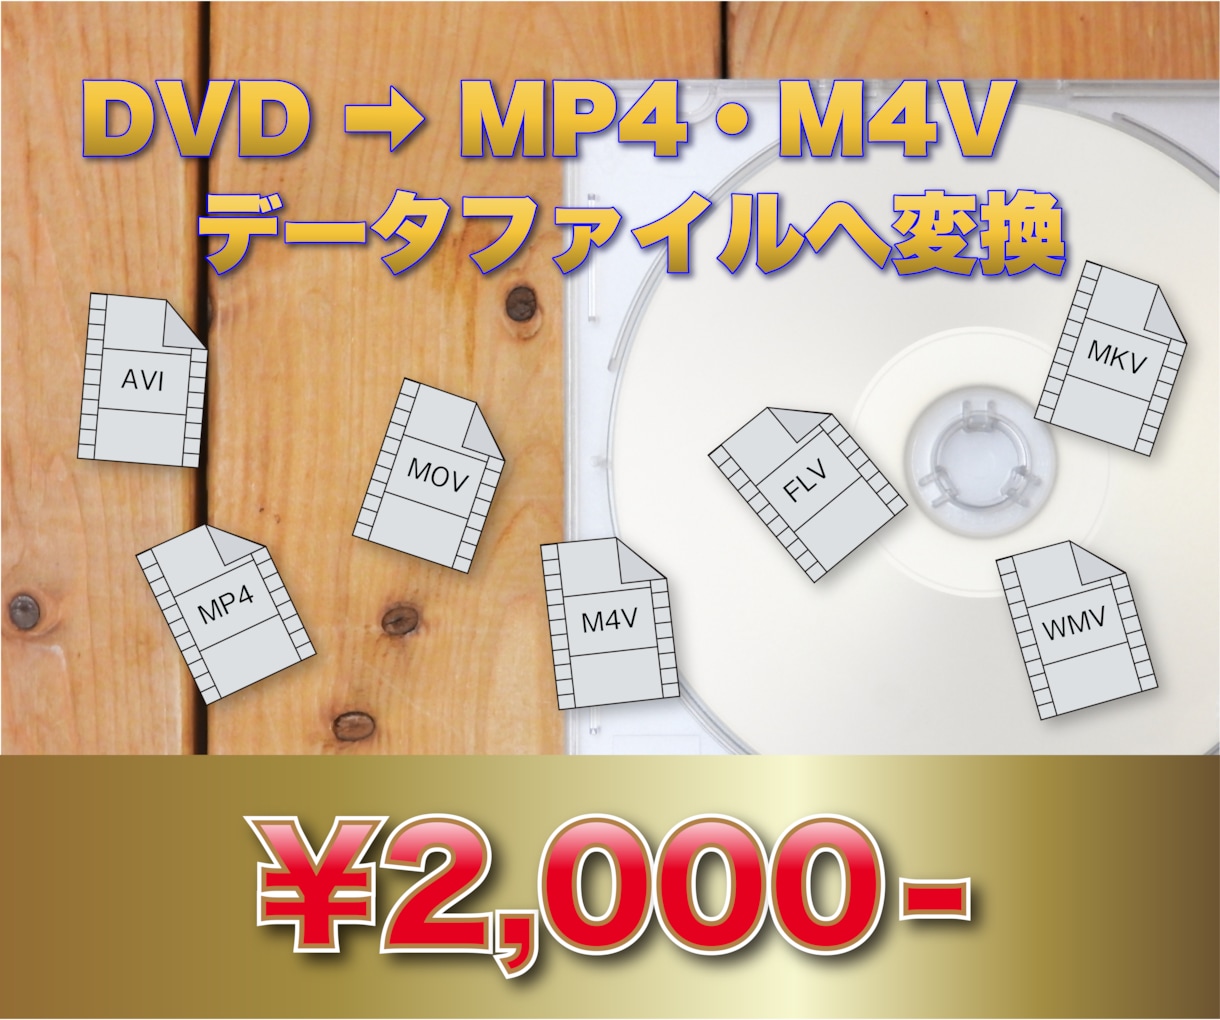 DVD→MP4・M4Vにファイル変換いたします DVDをパソコンやスマホ・タブレット等で簡単に観れる形に変換 イメージ1